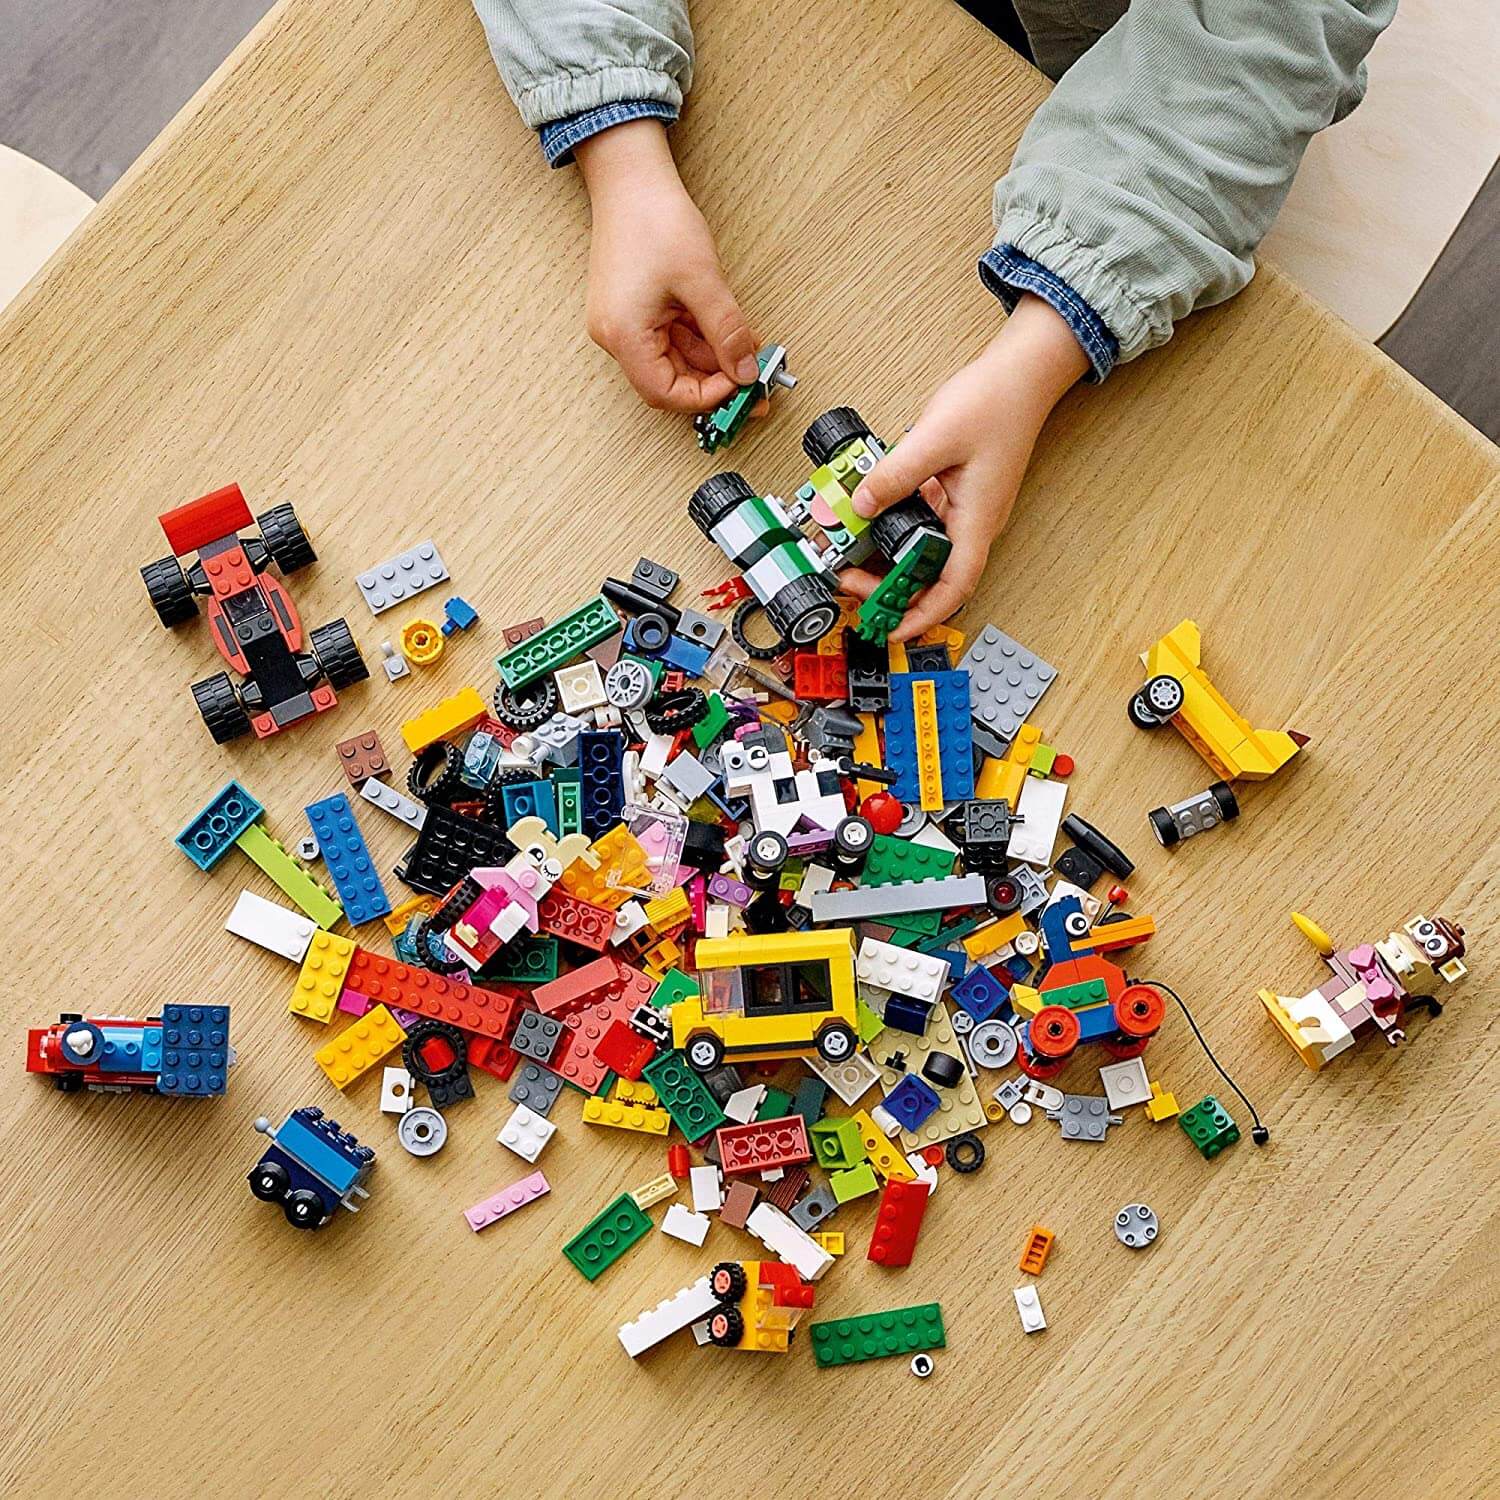 LEGO Classic Bricks 653 Piece Building Set